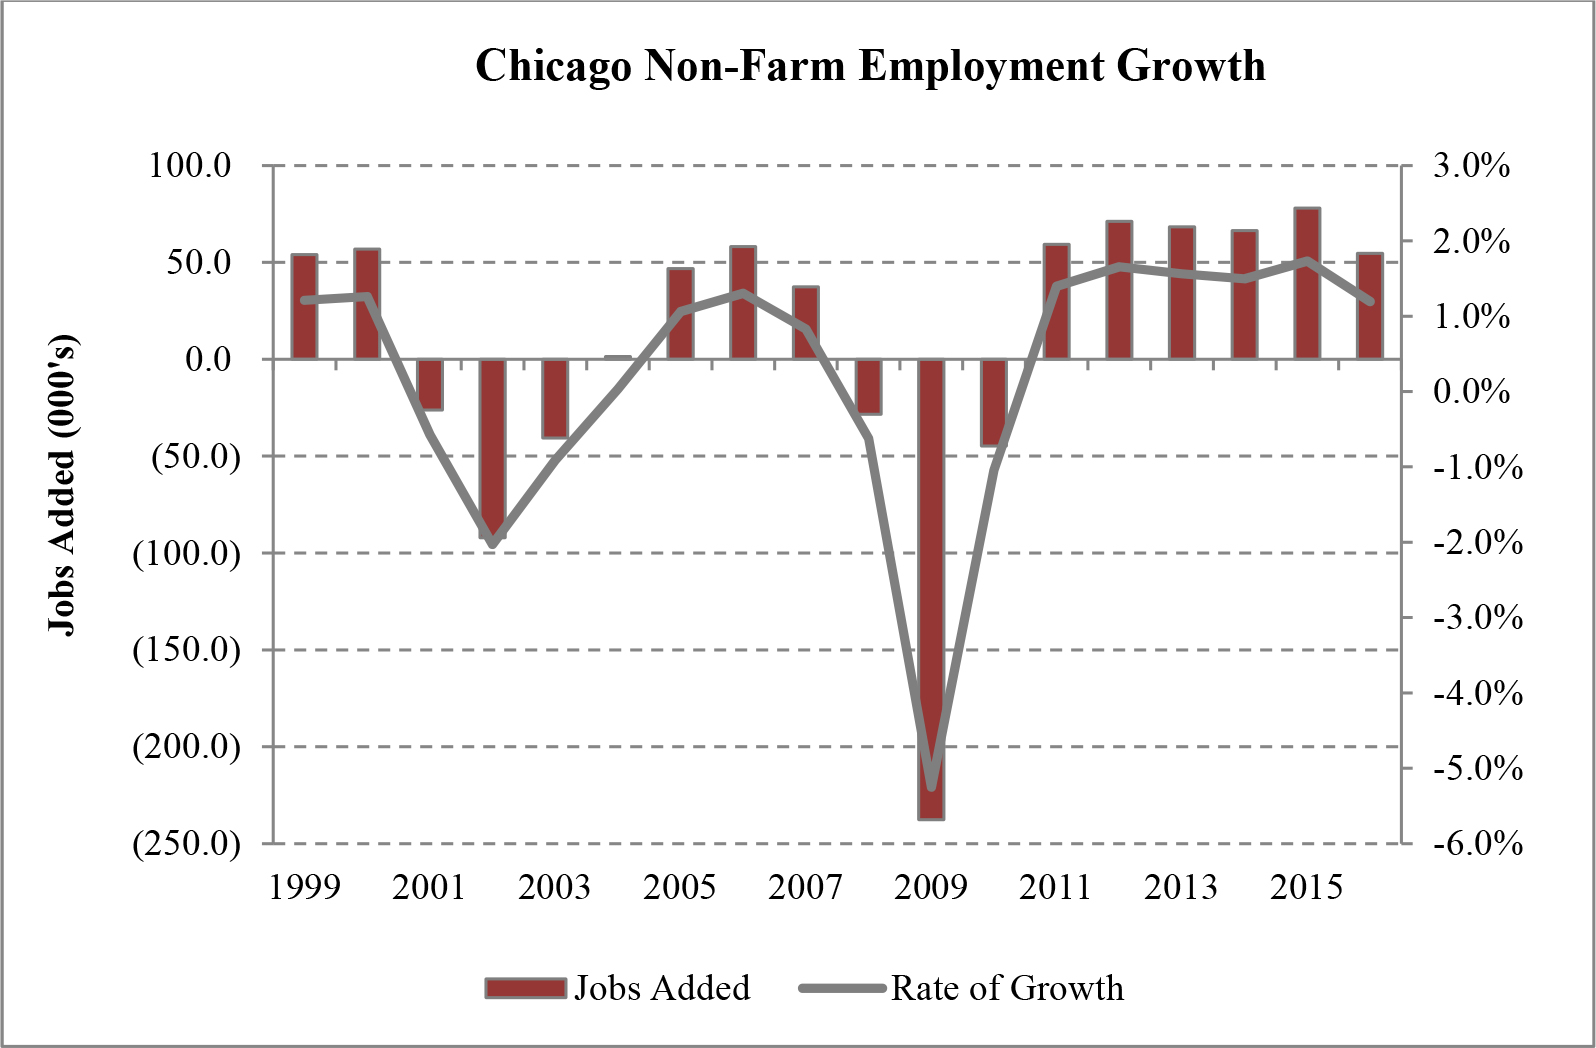 Chicago Non-Farm